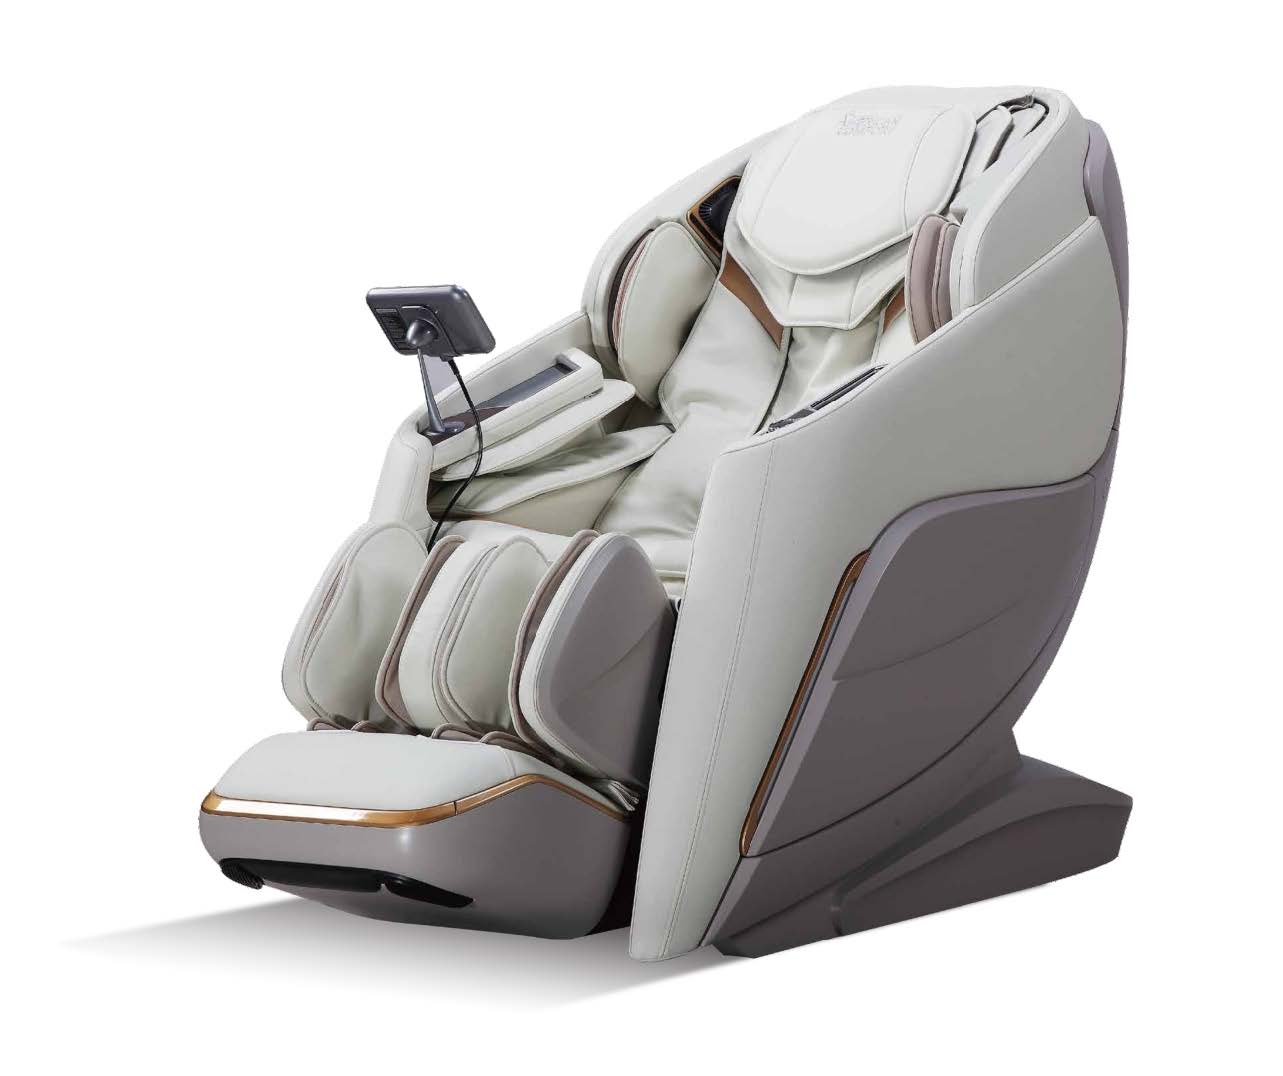 5D Massage Chair in panipat, 5D Massage Chair Manufacturers